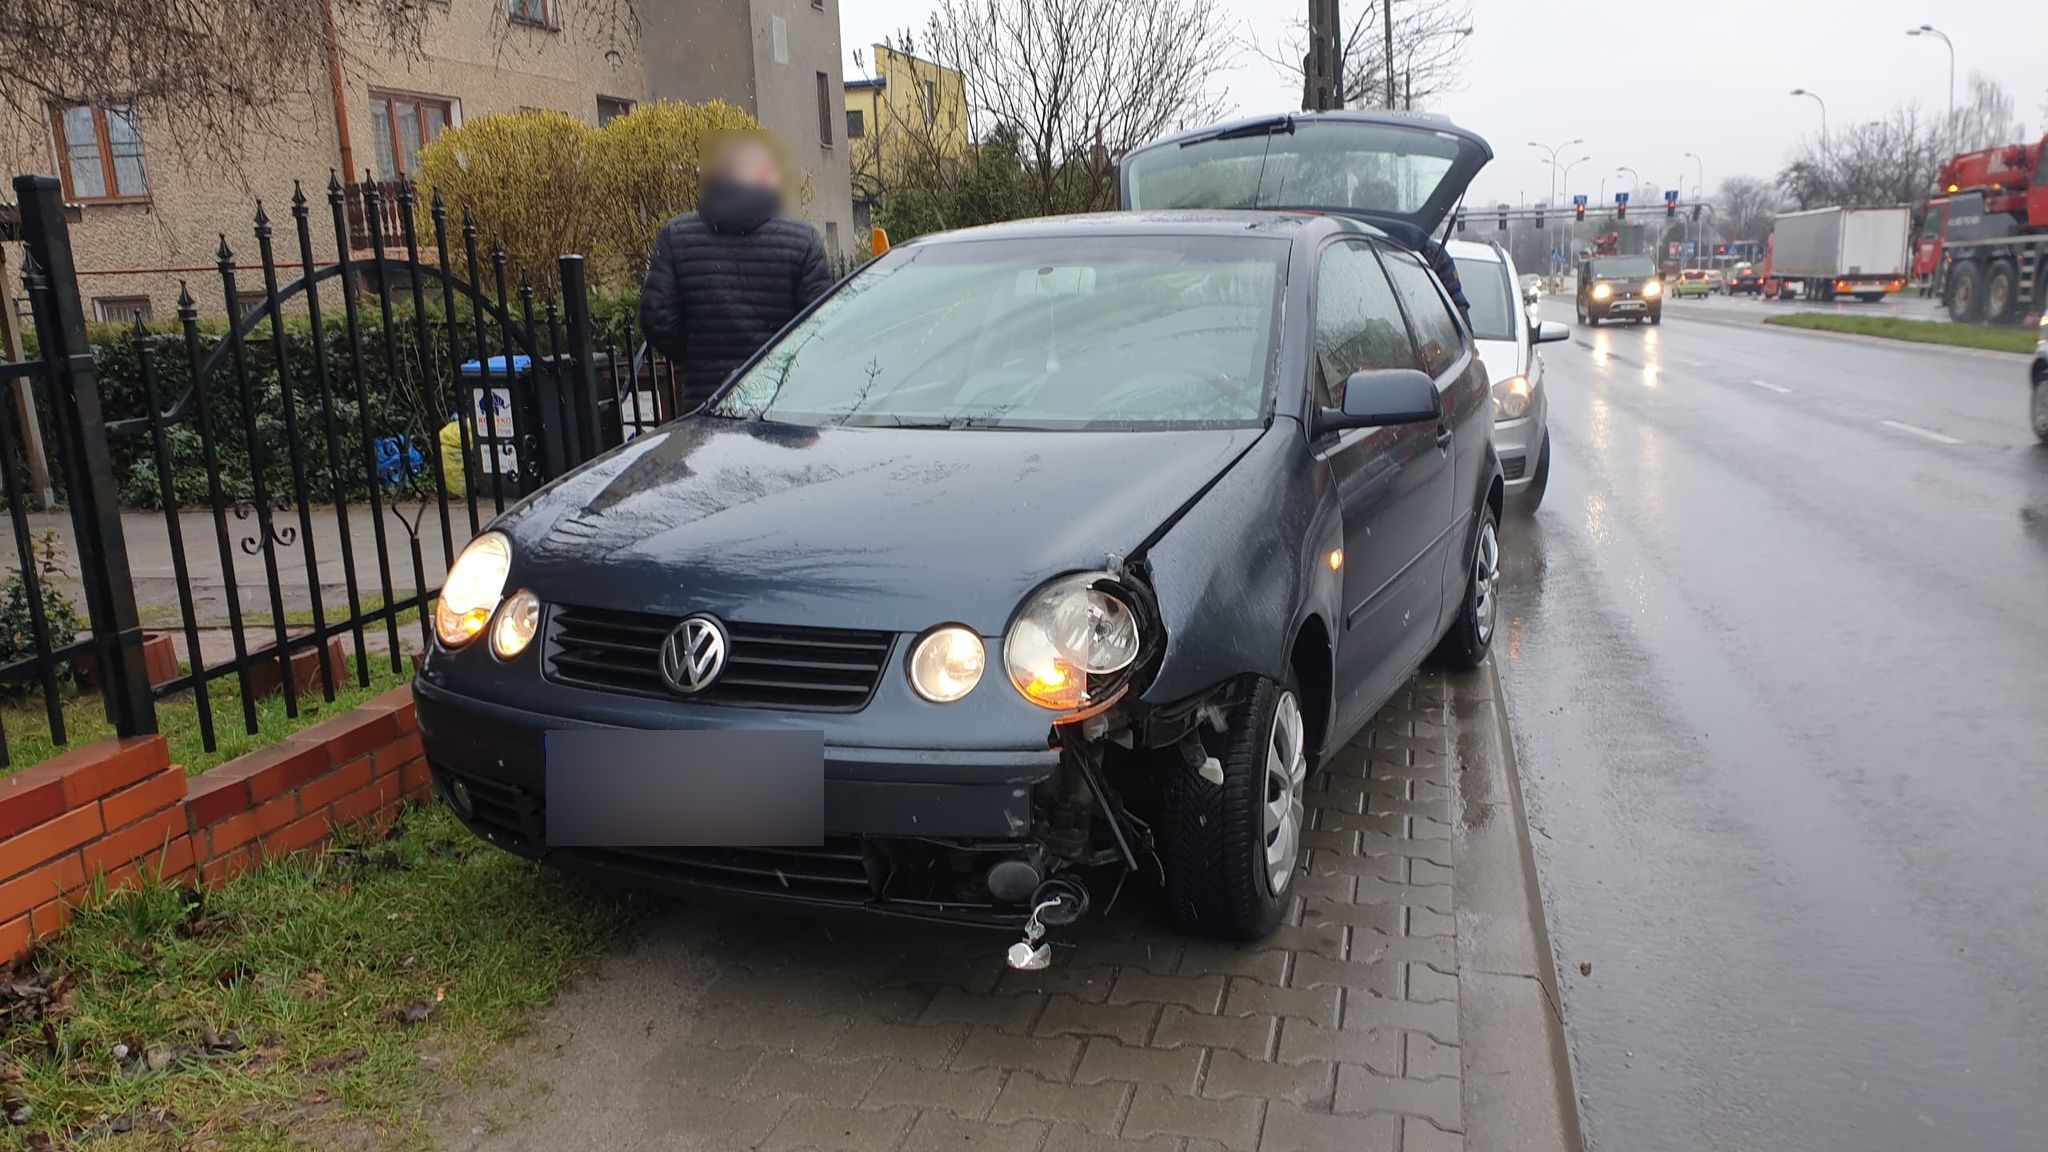 Na skrzyżowaniu stracił panowanie nad pojazdem.  Volkswagen uderzył w znak, posypały się plastiki (zdjęcia)